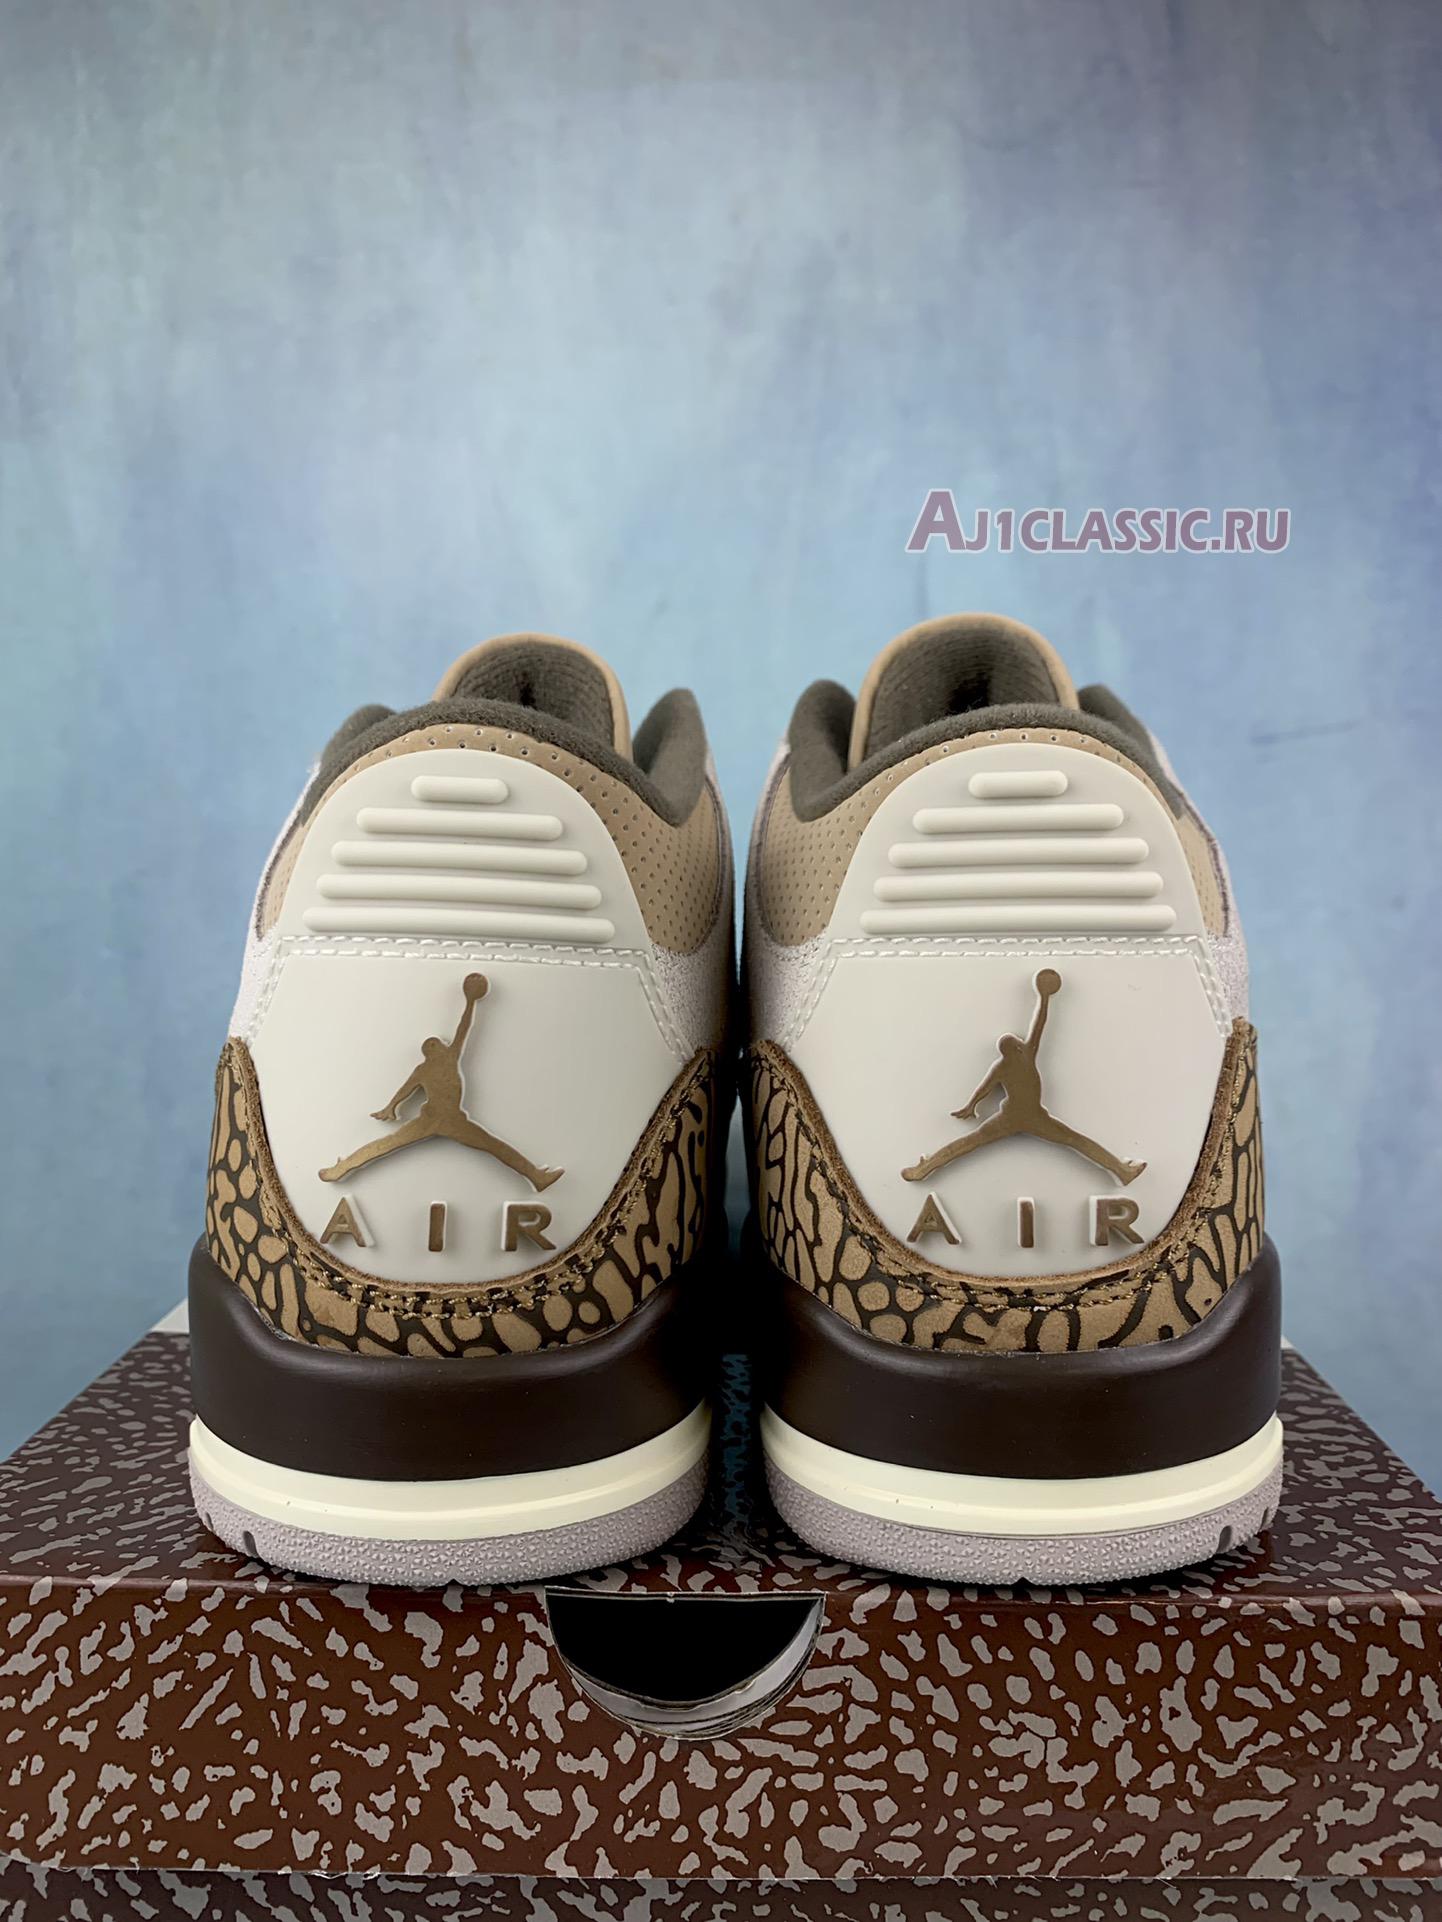 Air Jordan 3 Retro "Palomino" CT8532-102